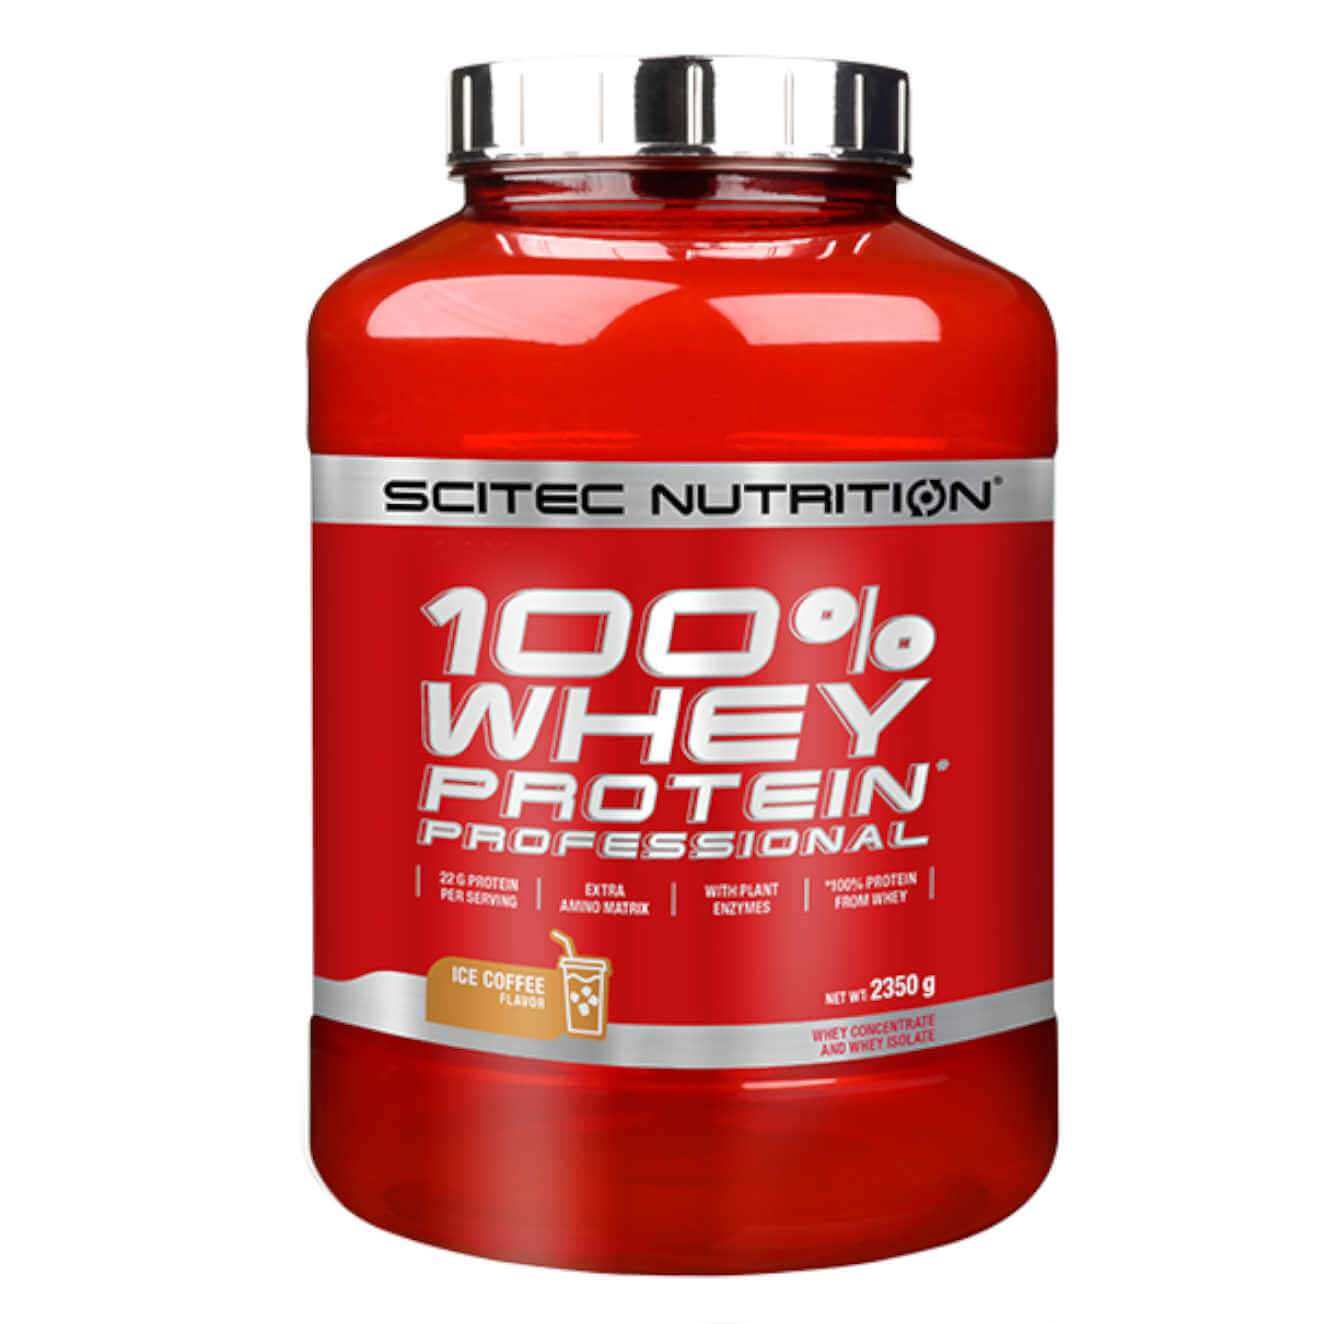 Scitec nutrition 100